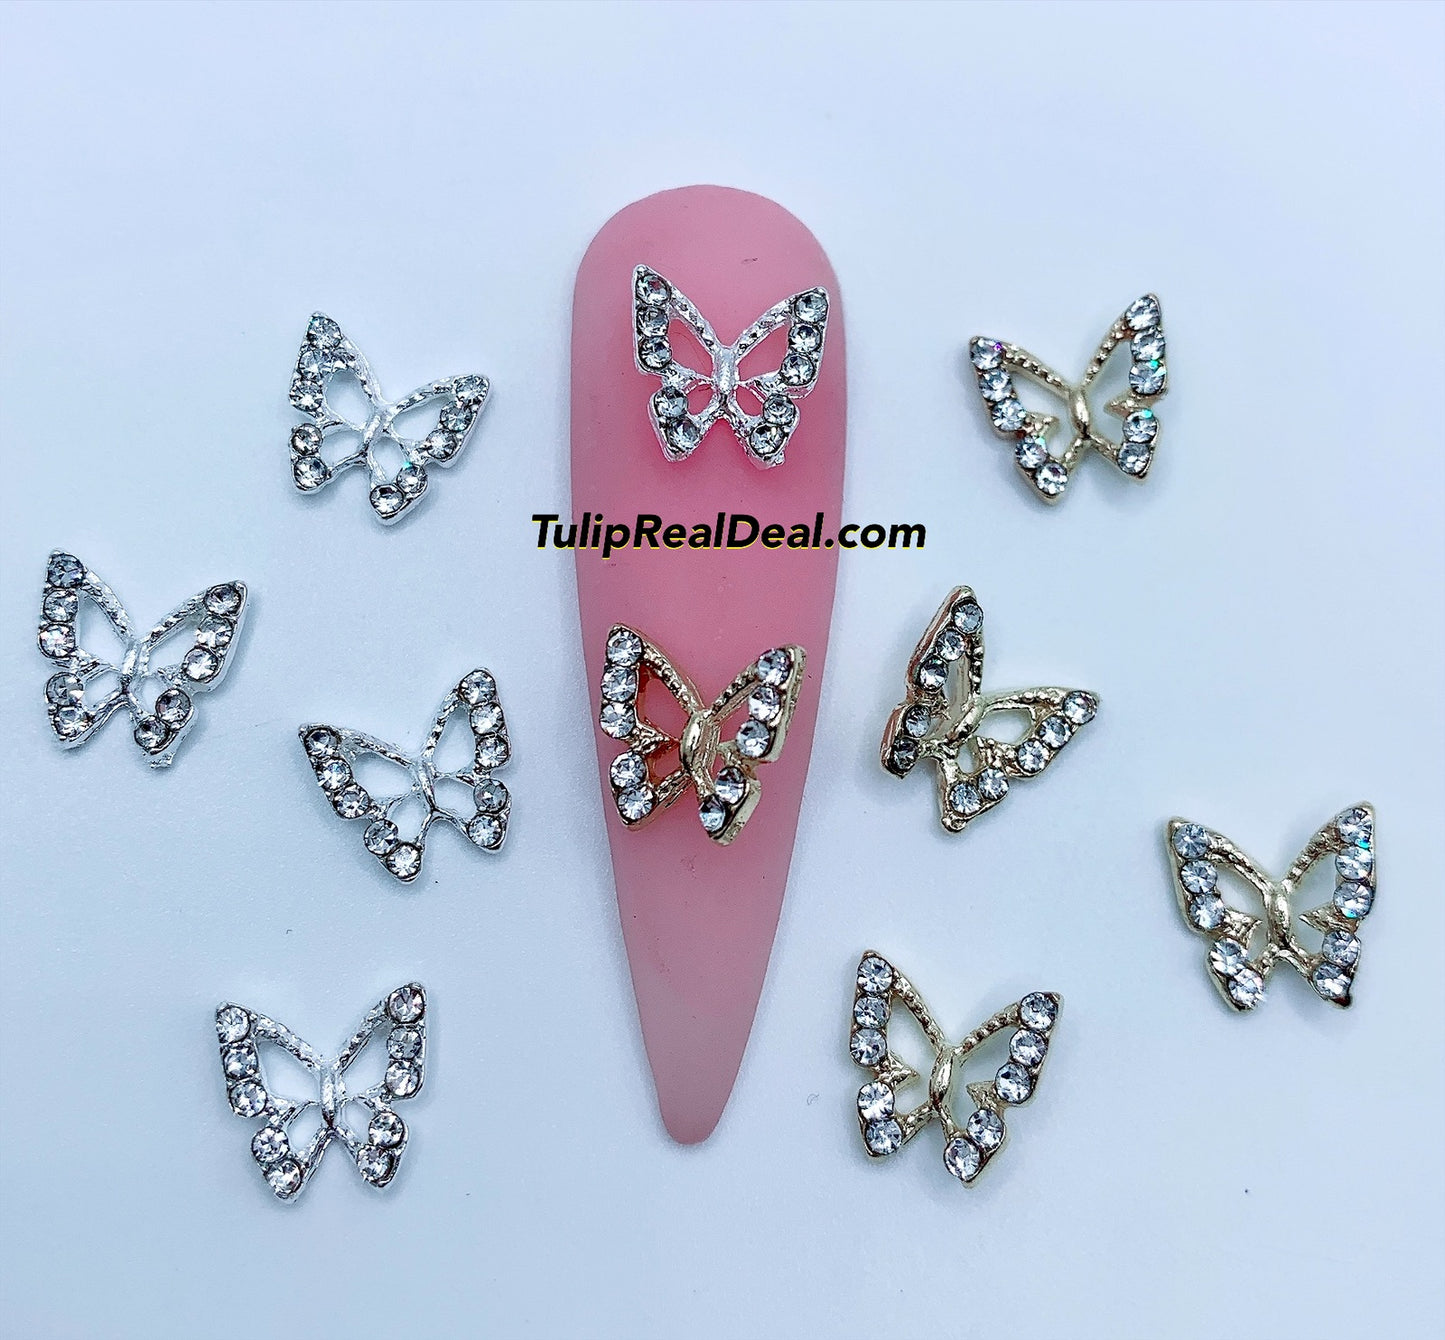 Butterflies 3D charm 5pcs